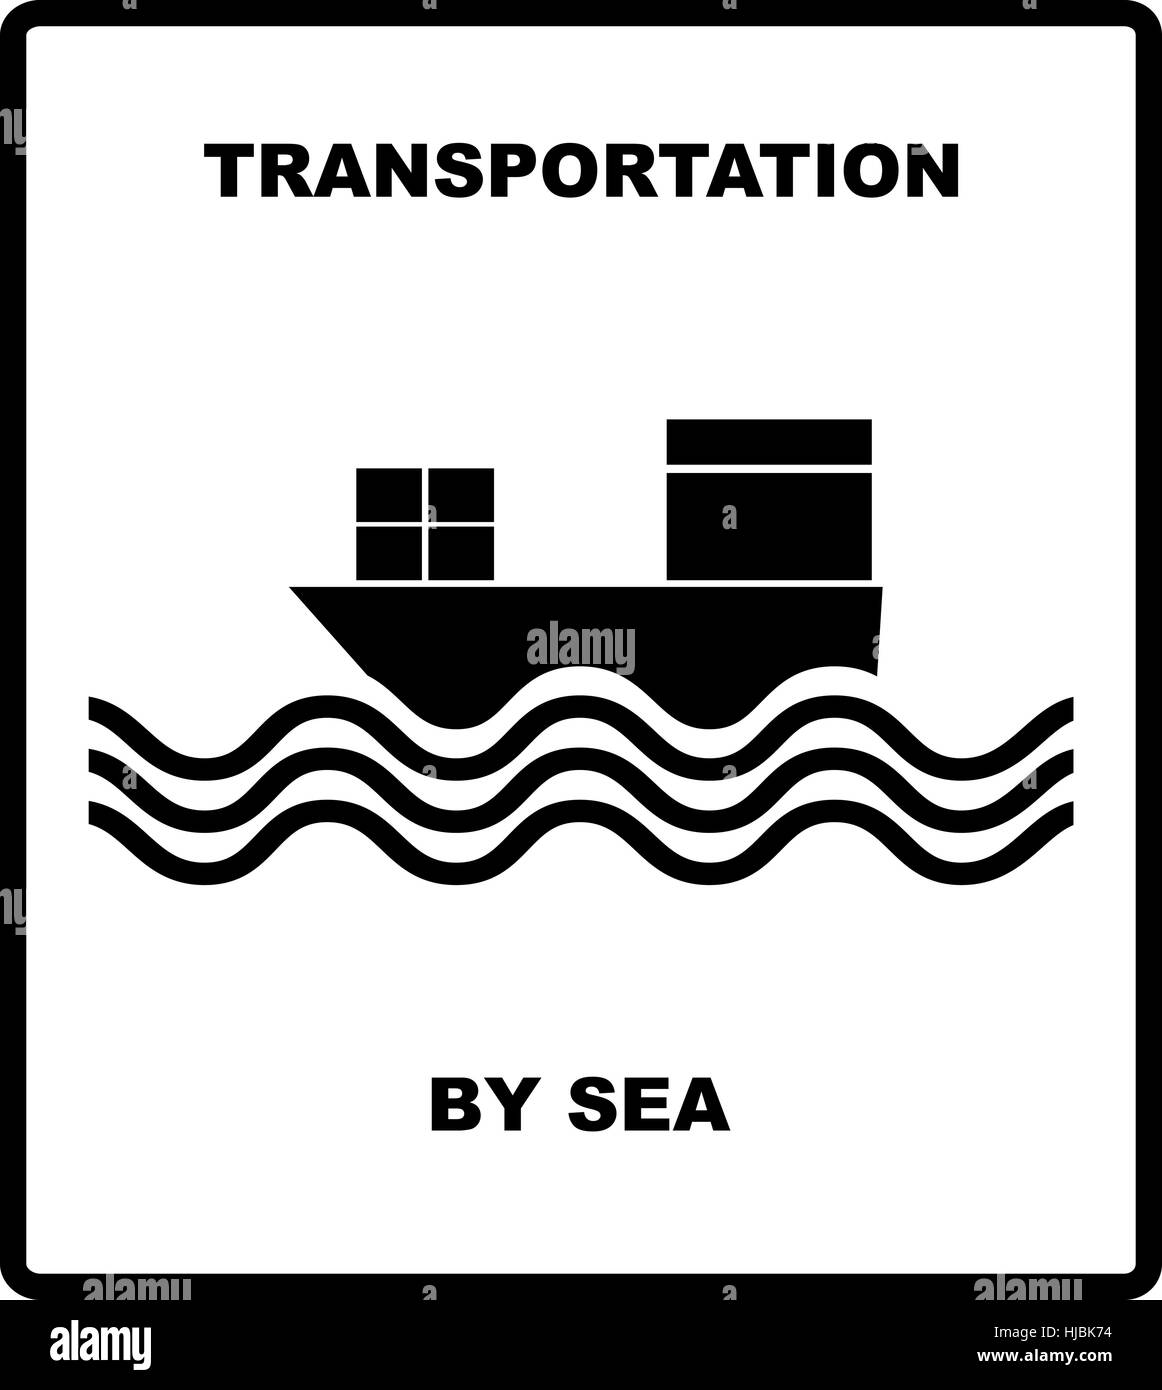 Passagier- und Transport von Meer, Eisenbahnen, Flugzeuge, LKW-Vektor-Illustration. Cargo Versand Banner für die Box. Vektor-Illustration. Schwarz Stock Vektor